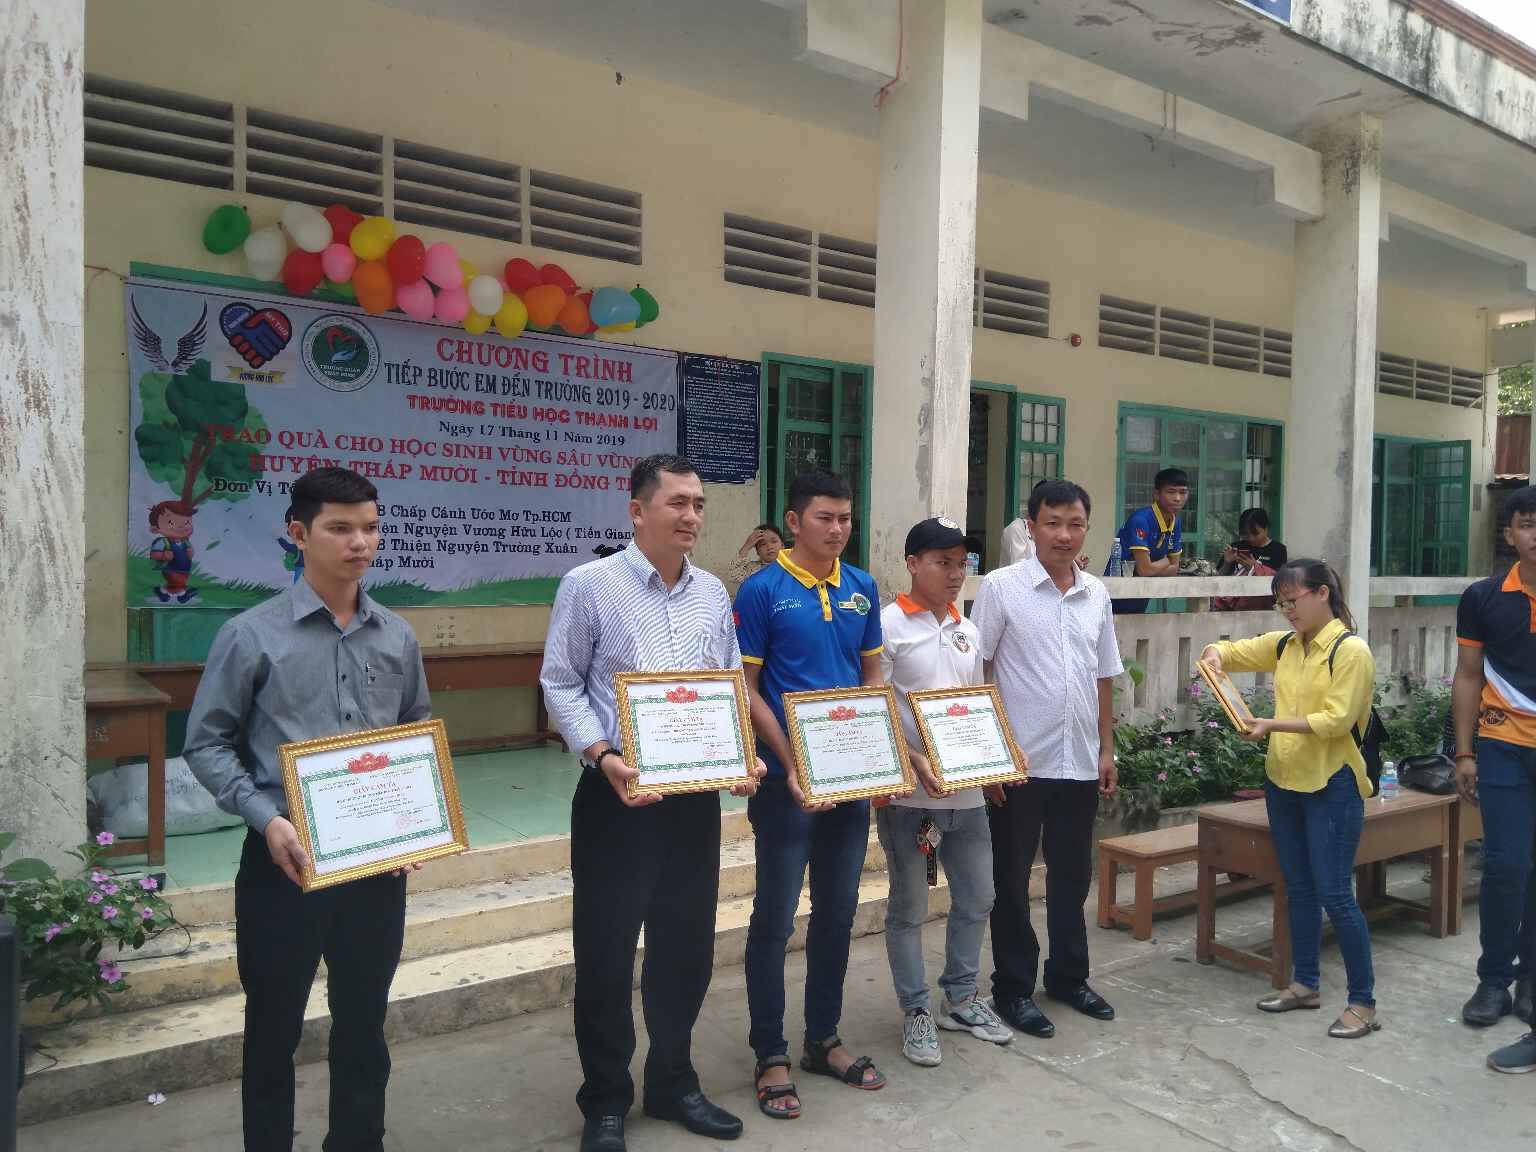 Đại diện nhà trường thầy Trần Hữu Phước ( chủ tịch công đoàn) đã tặng giấy cảm tạ cho các nhà hảo tâm.